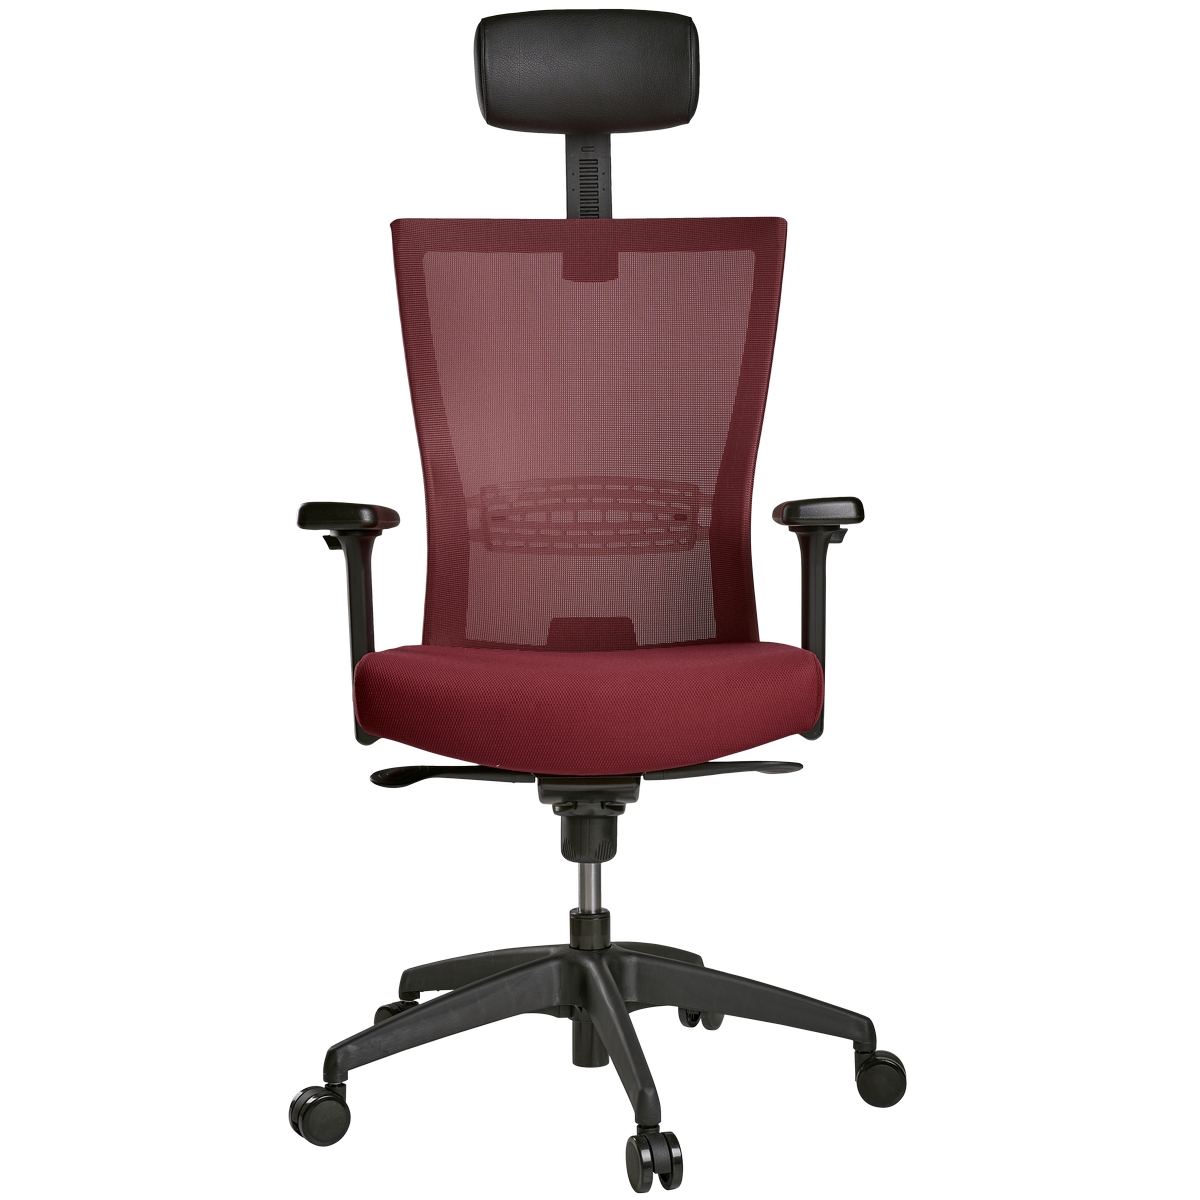 Эргономичное кресло schairs aire-111b от schairs, Корея бордовый